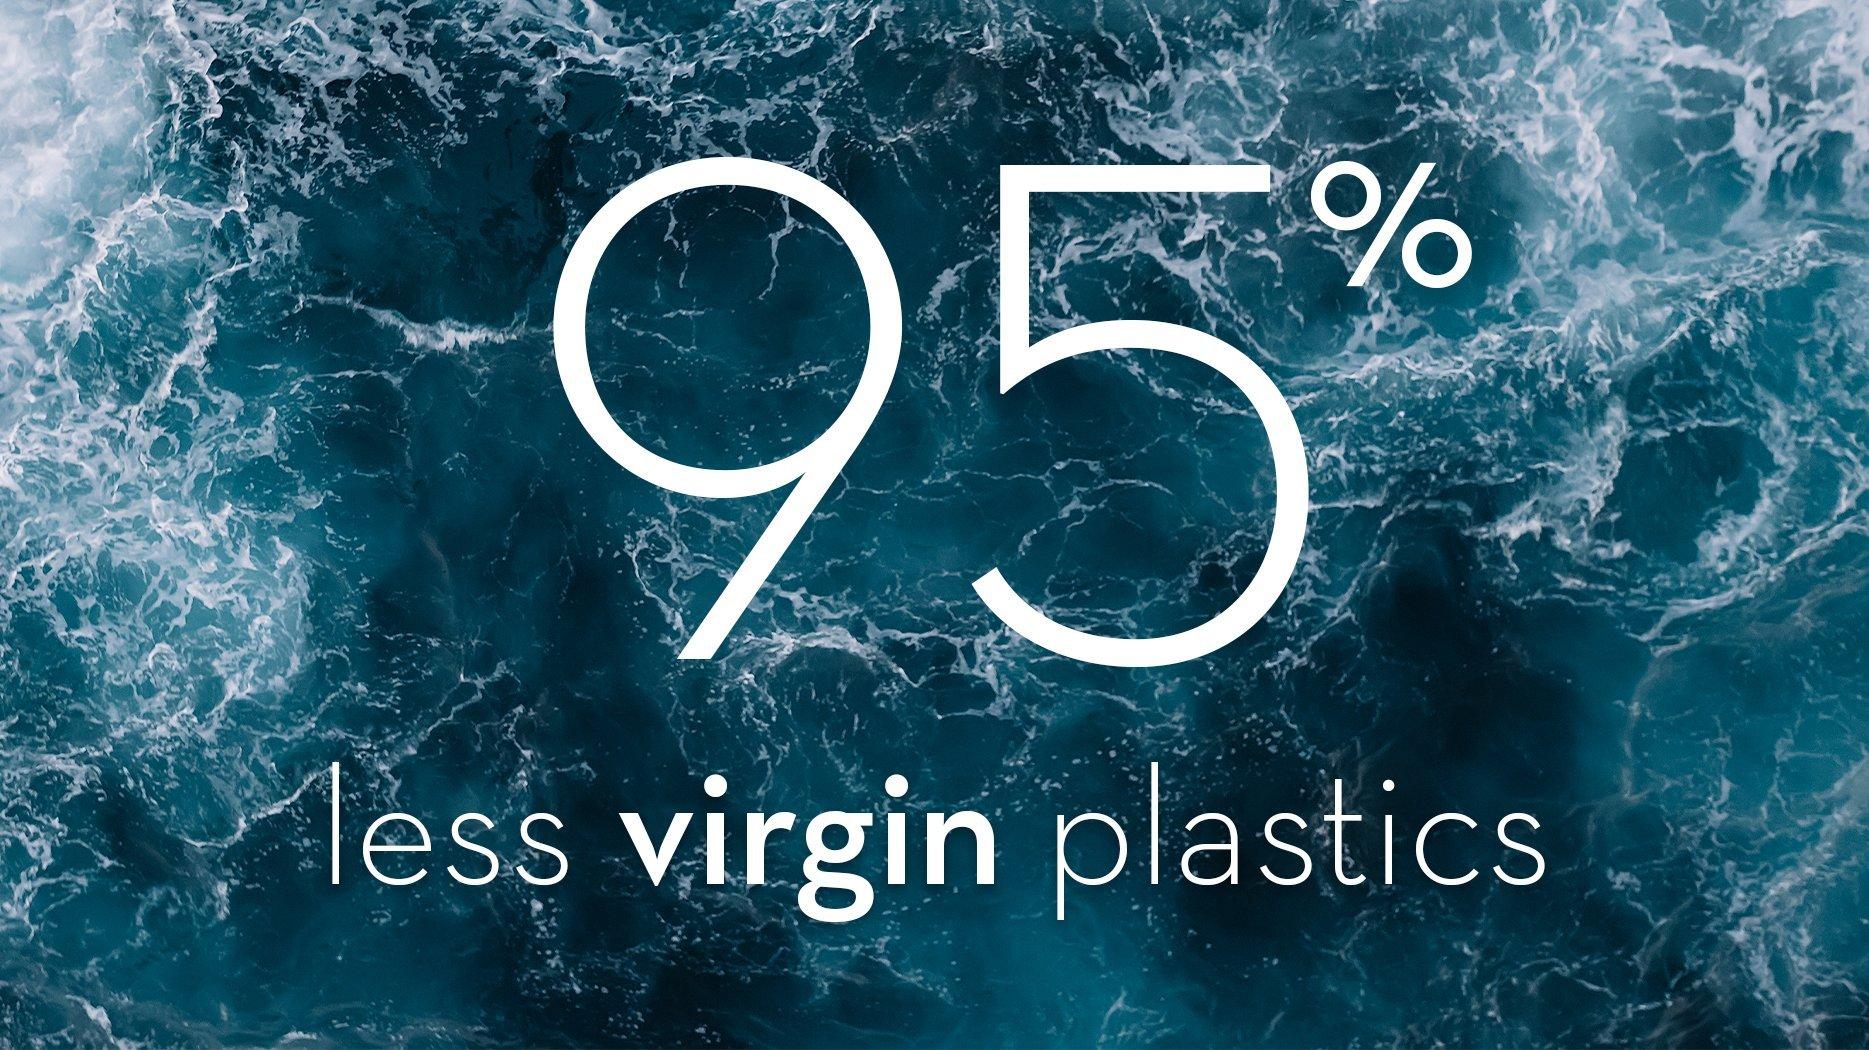 CATRICE Fenntarthatóság és társadalmi felelősségvállalás Plastics For Change Virgin Plastics